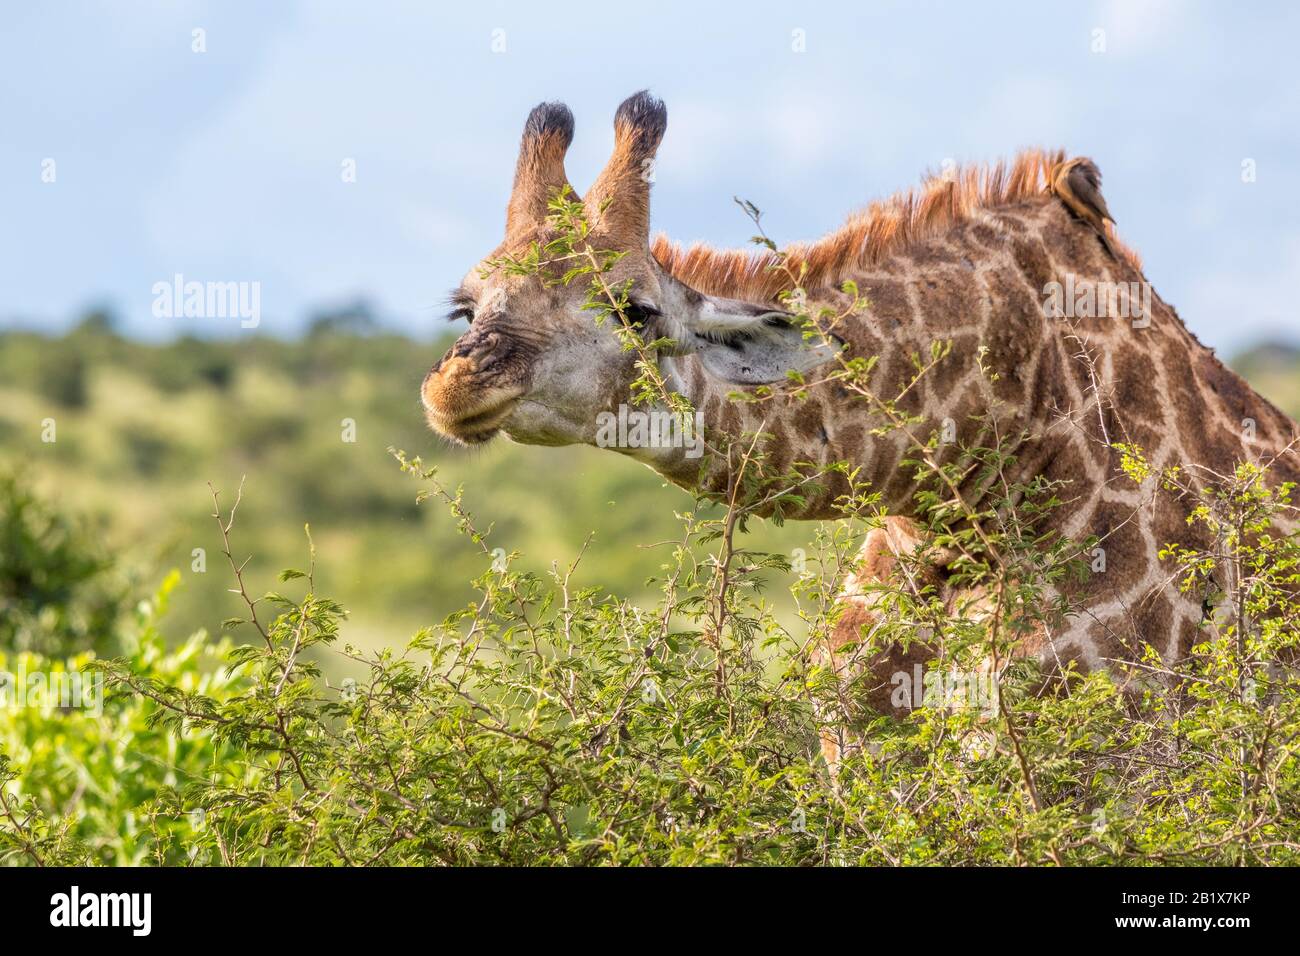 Una giraffa alta si affatica sulle foglie tenera in cima ad un'immagine ad albero in formato orizzontale Foto Stock